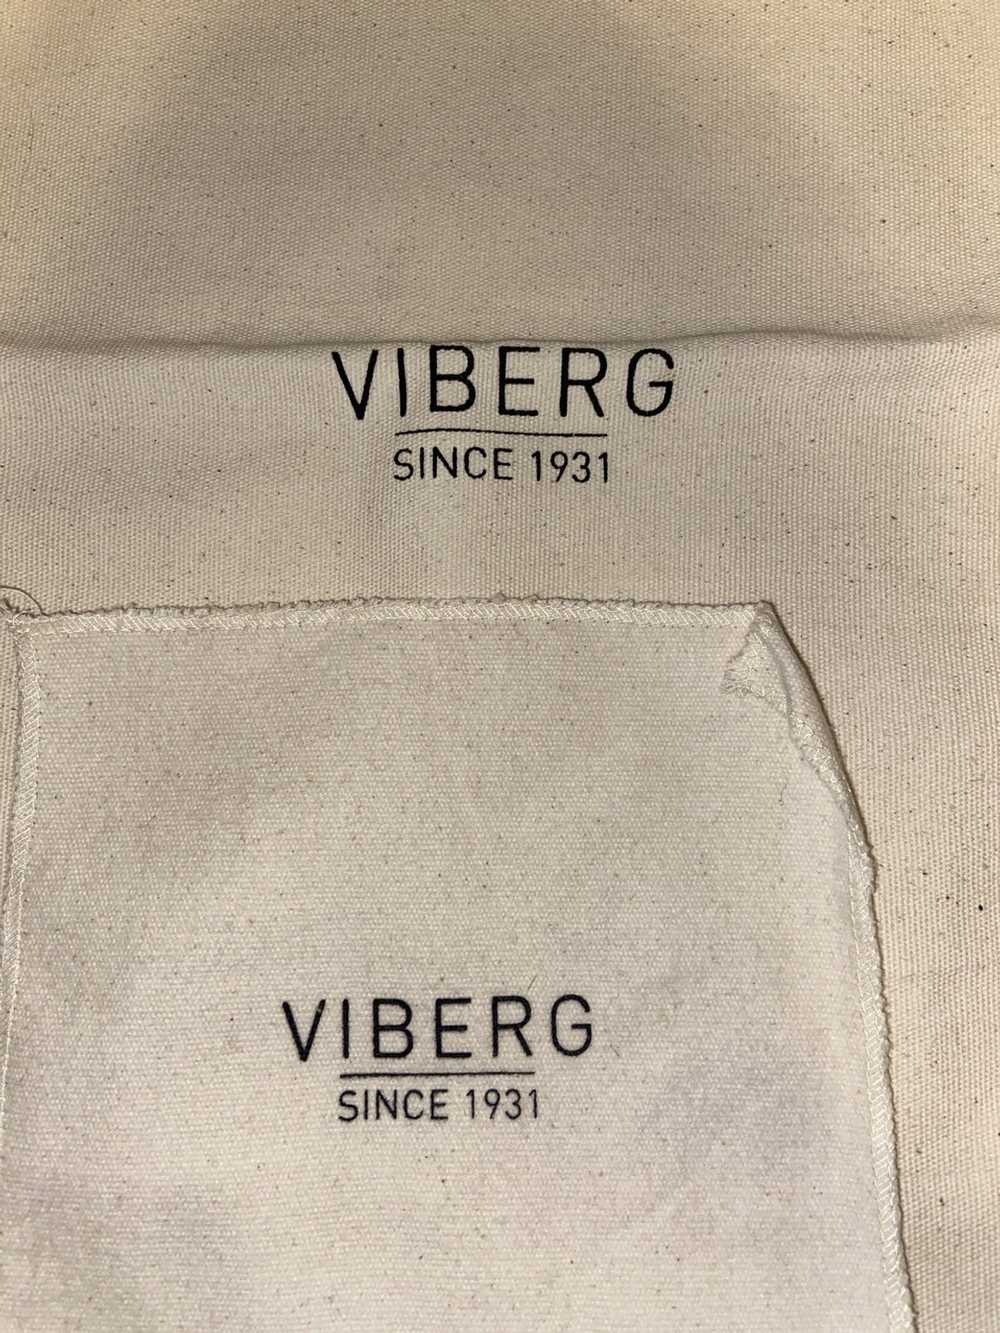 Viberg Viberg Black Leather Work Boots - image 7